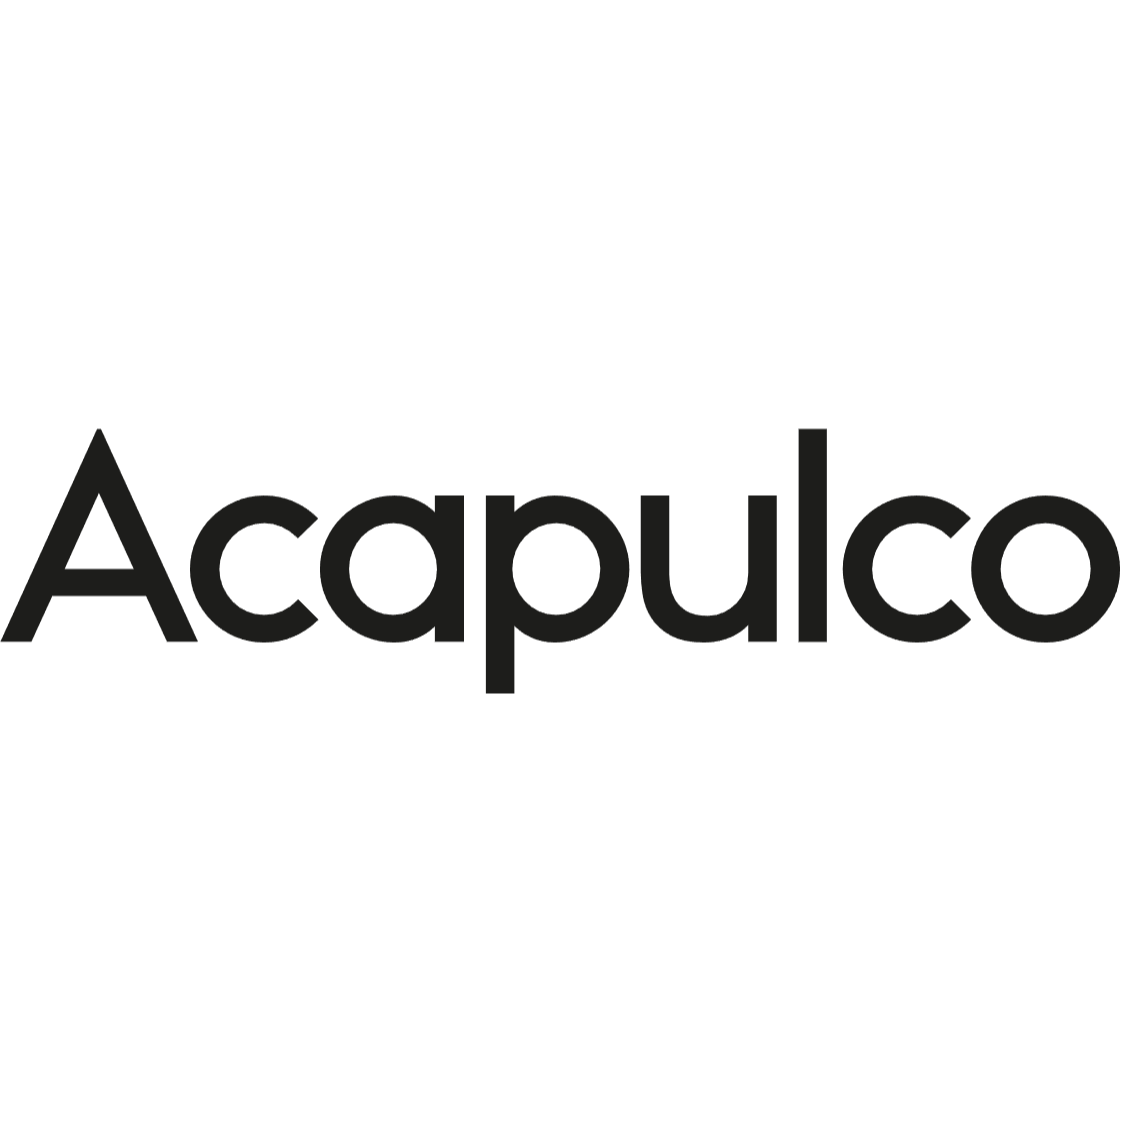 Acapulco Design Logo